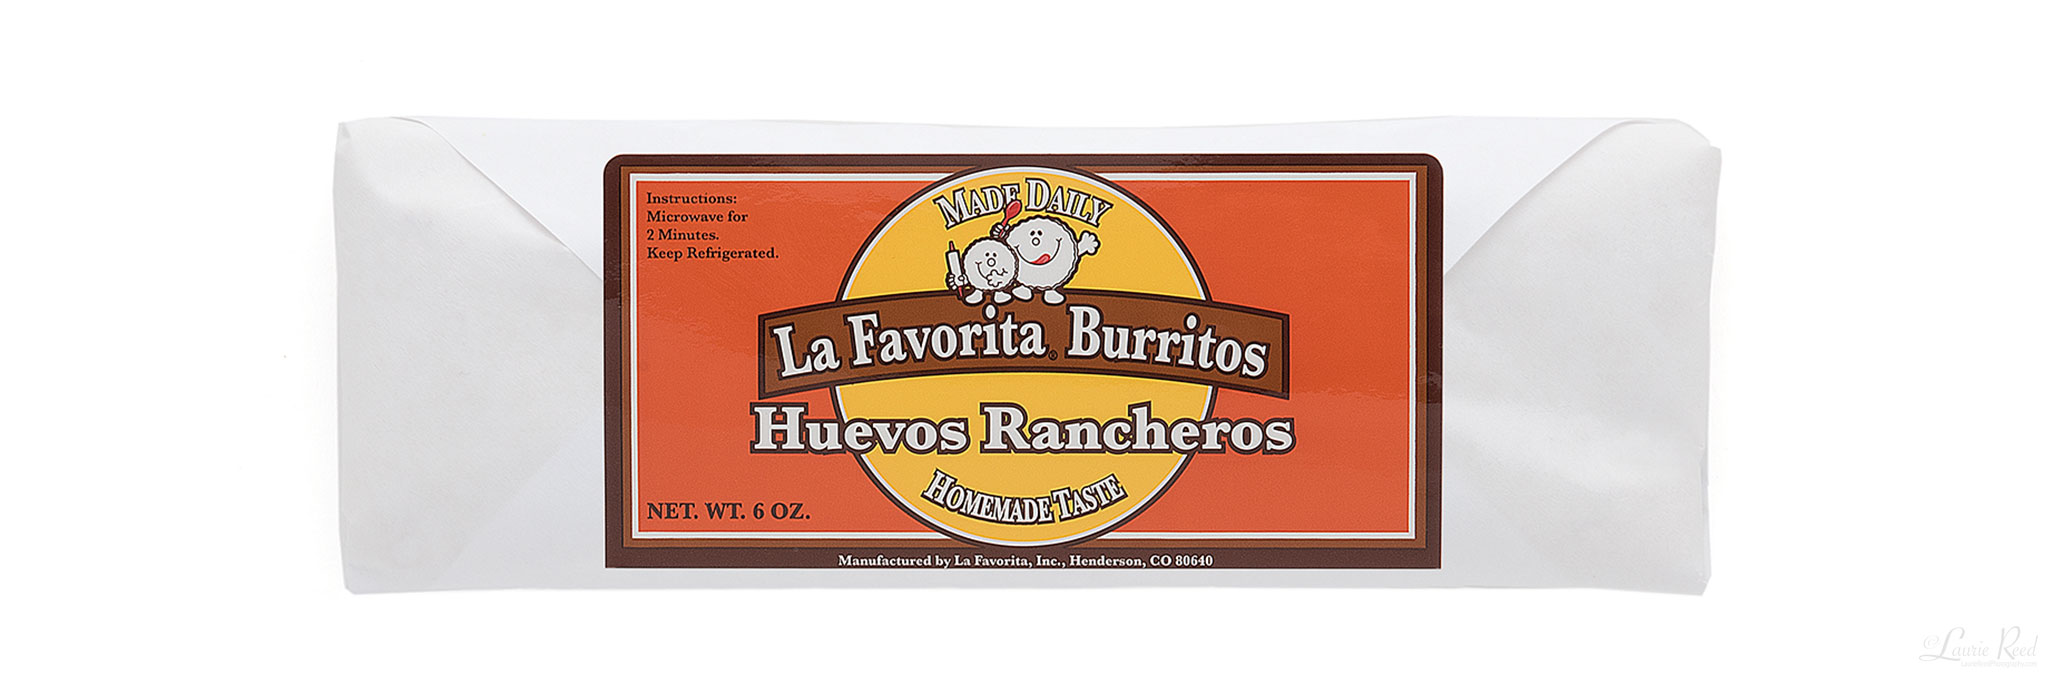 LaFavorita Burrito - Huevos Rancheros